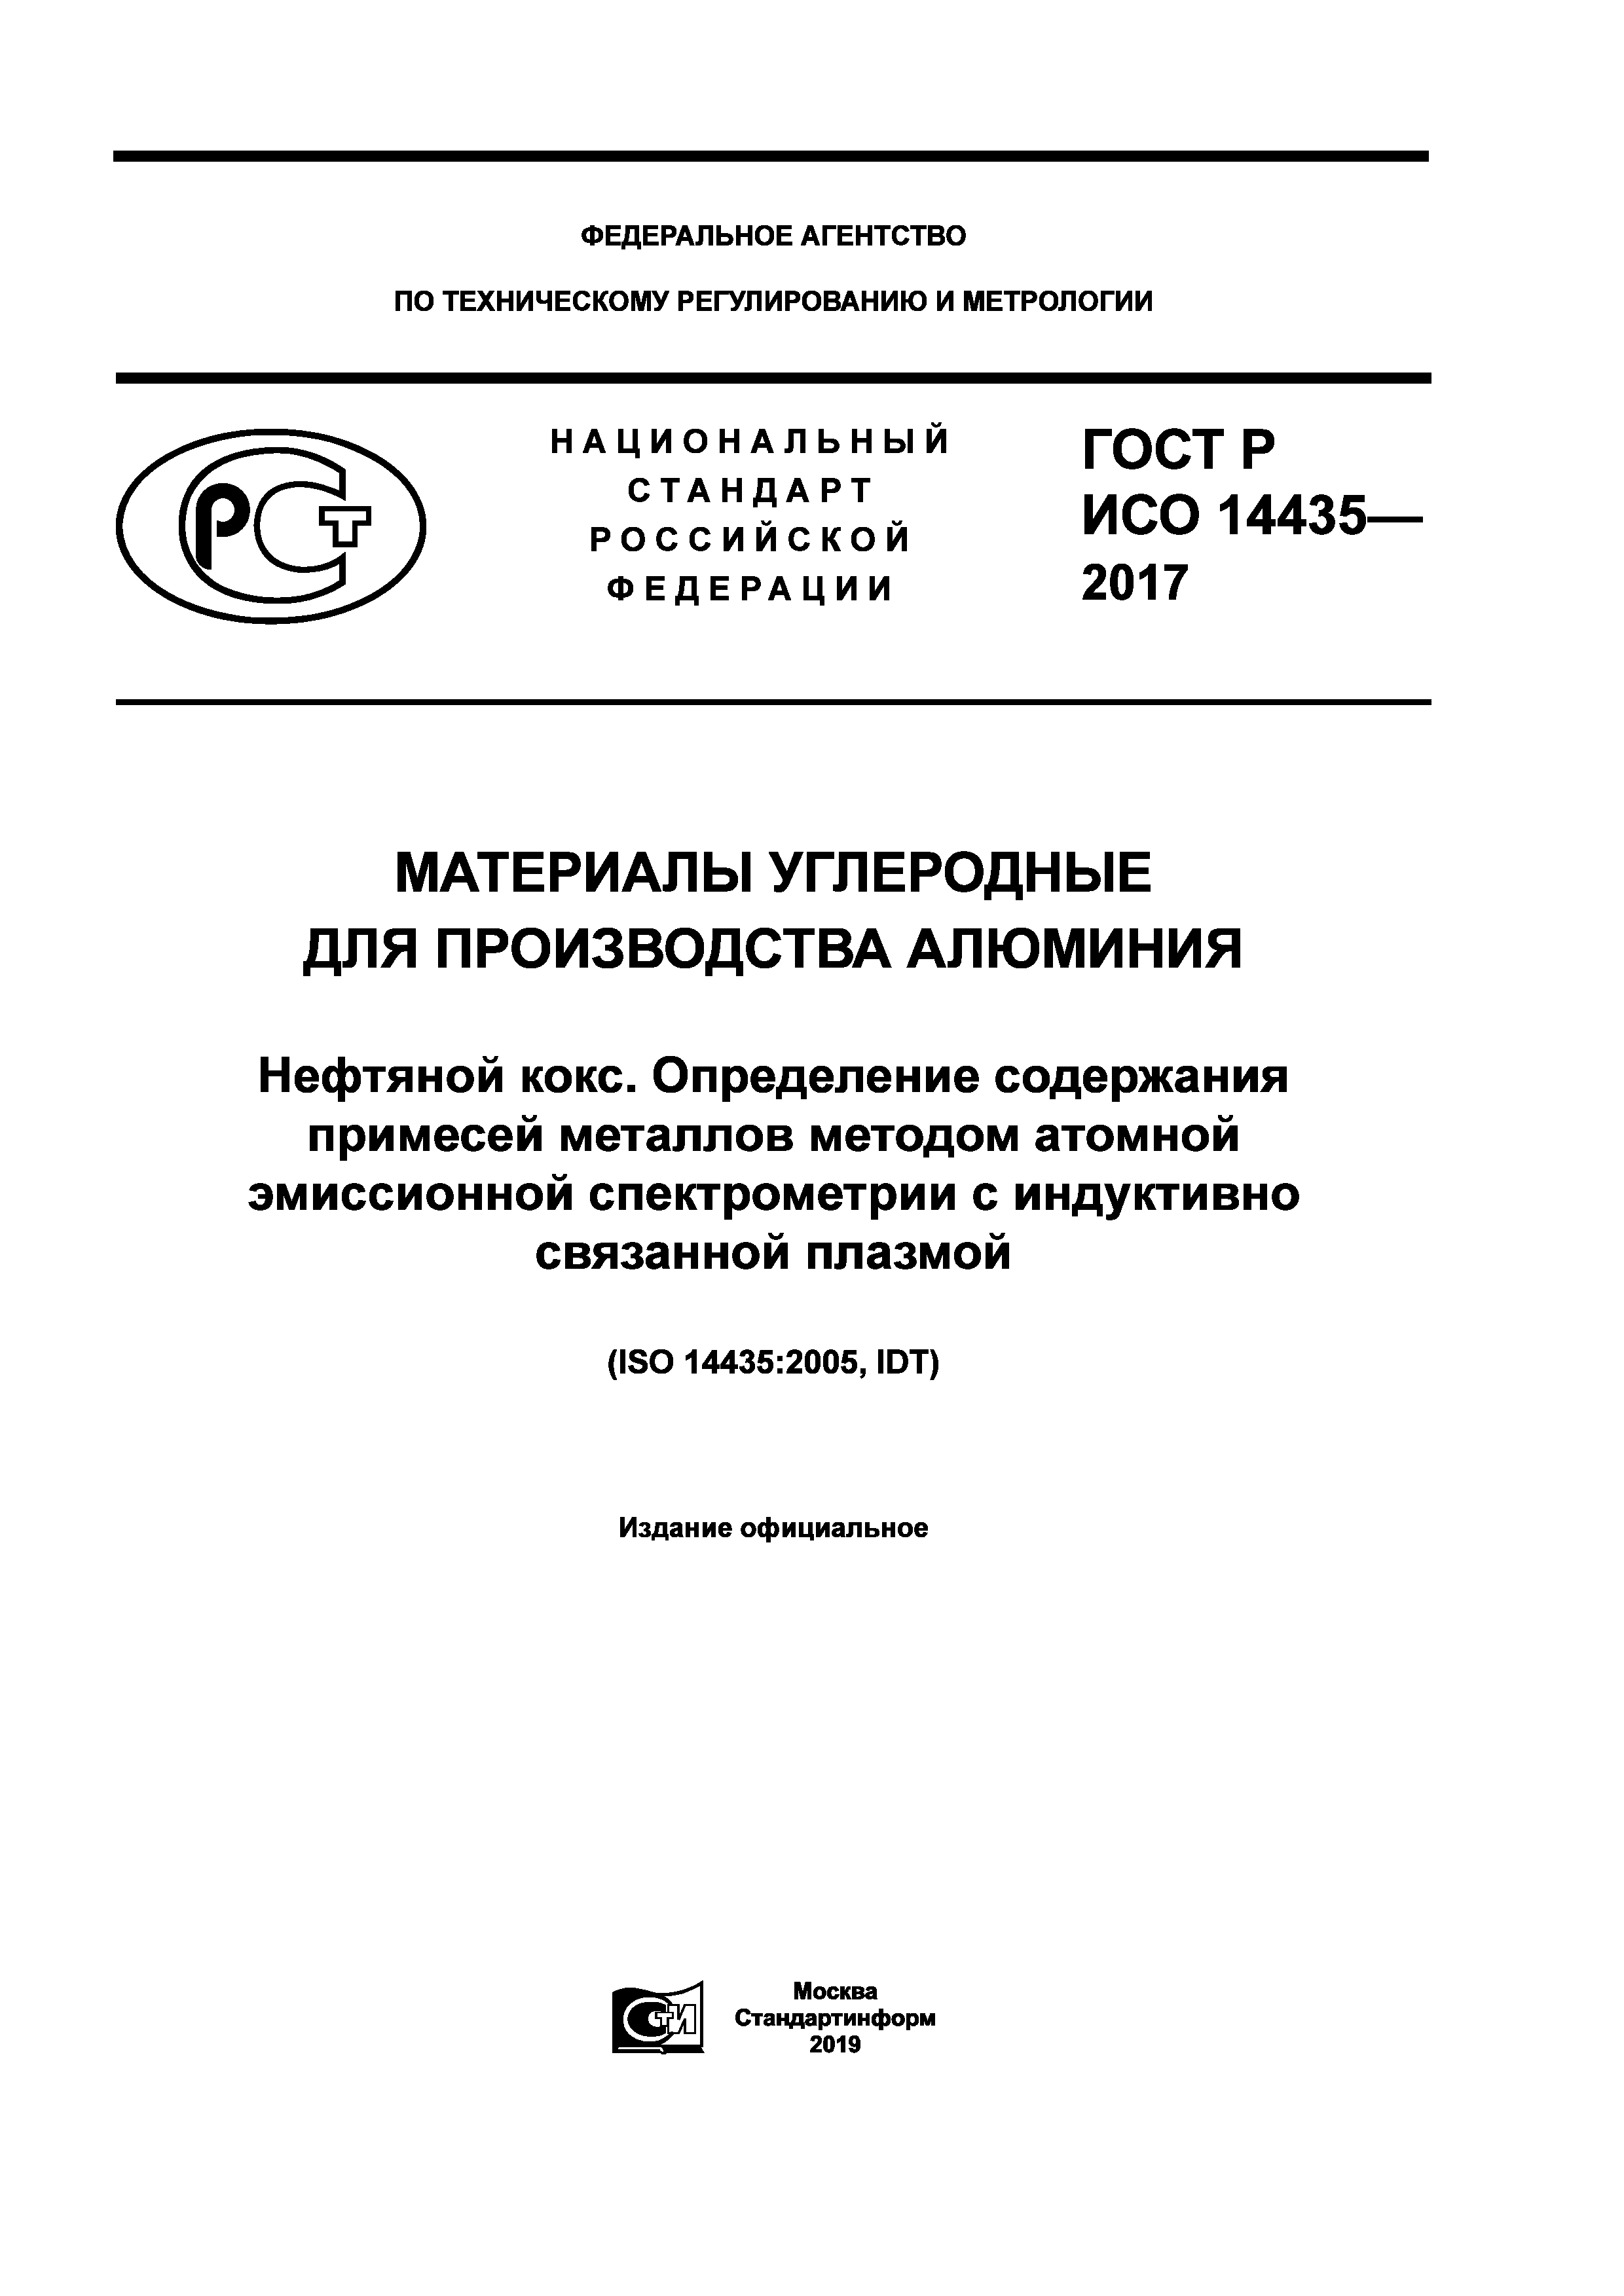 ГОСТ Р ИСО 14435-2017